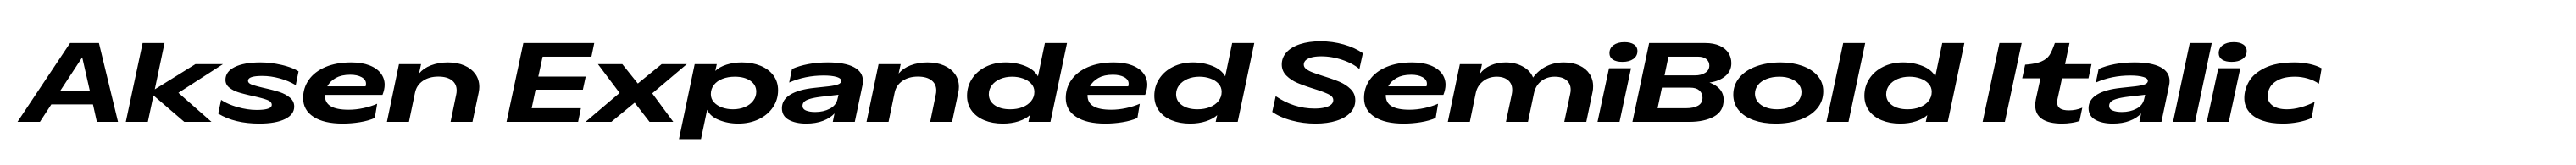 Aksen Expanded SemiBold Italic